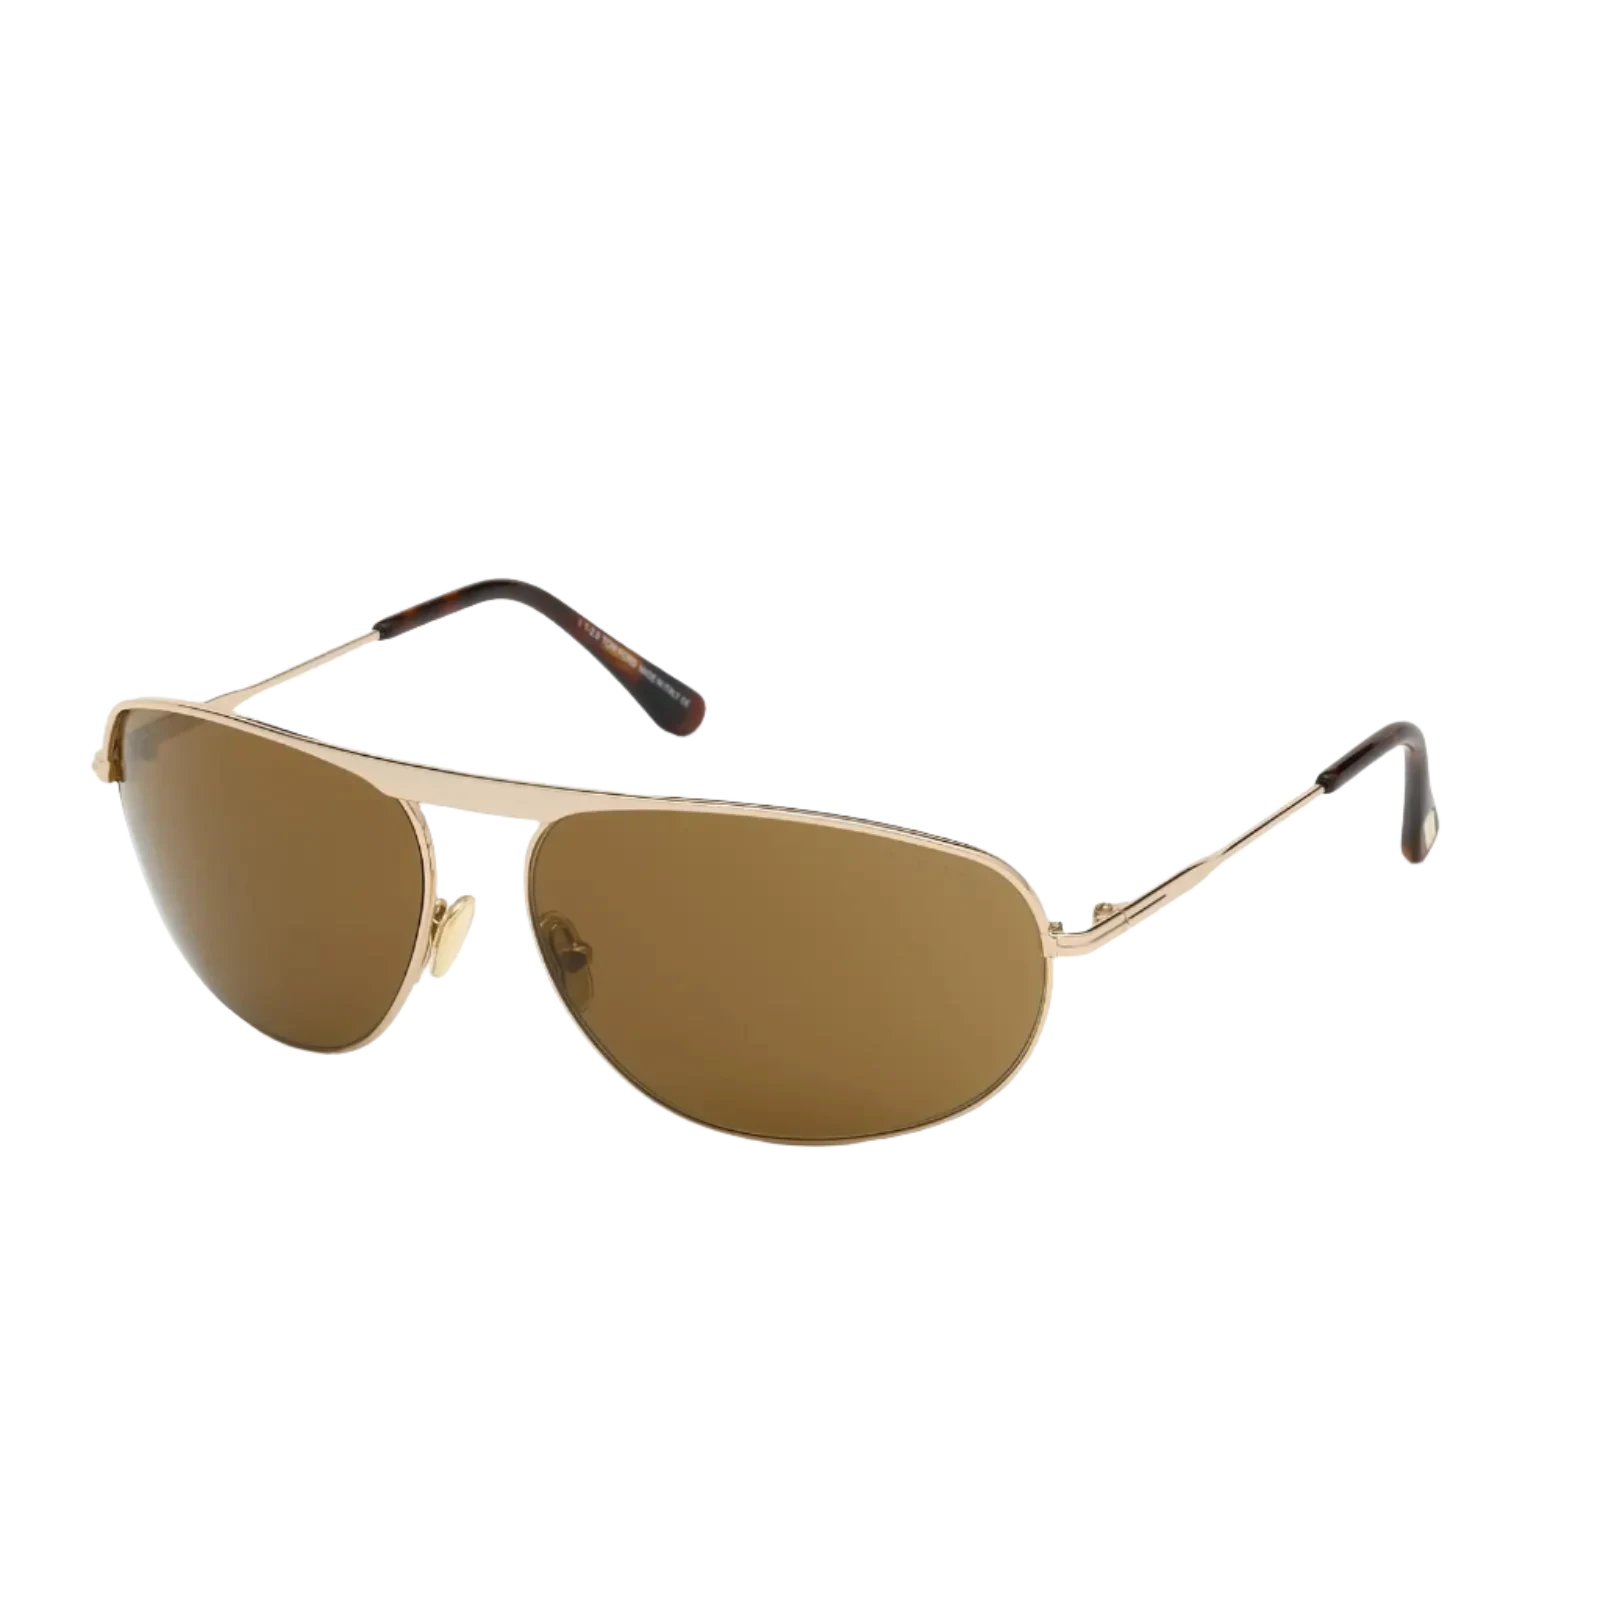 Tom Ford Sunglasses Tom Ford Sunglasses FT0774 28E 63mm Gabe Eyeglasses Eyewear UK USA Australia 